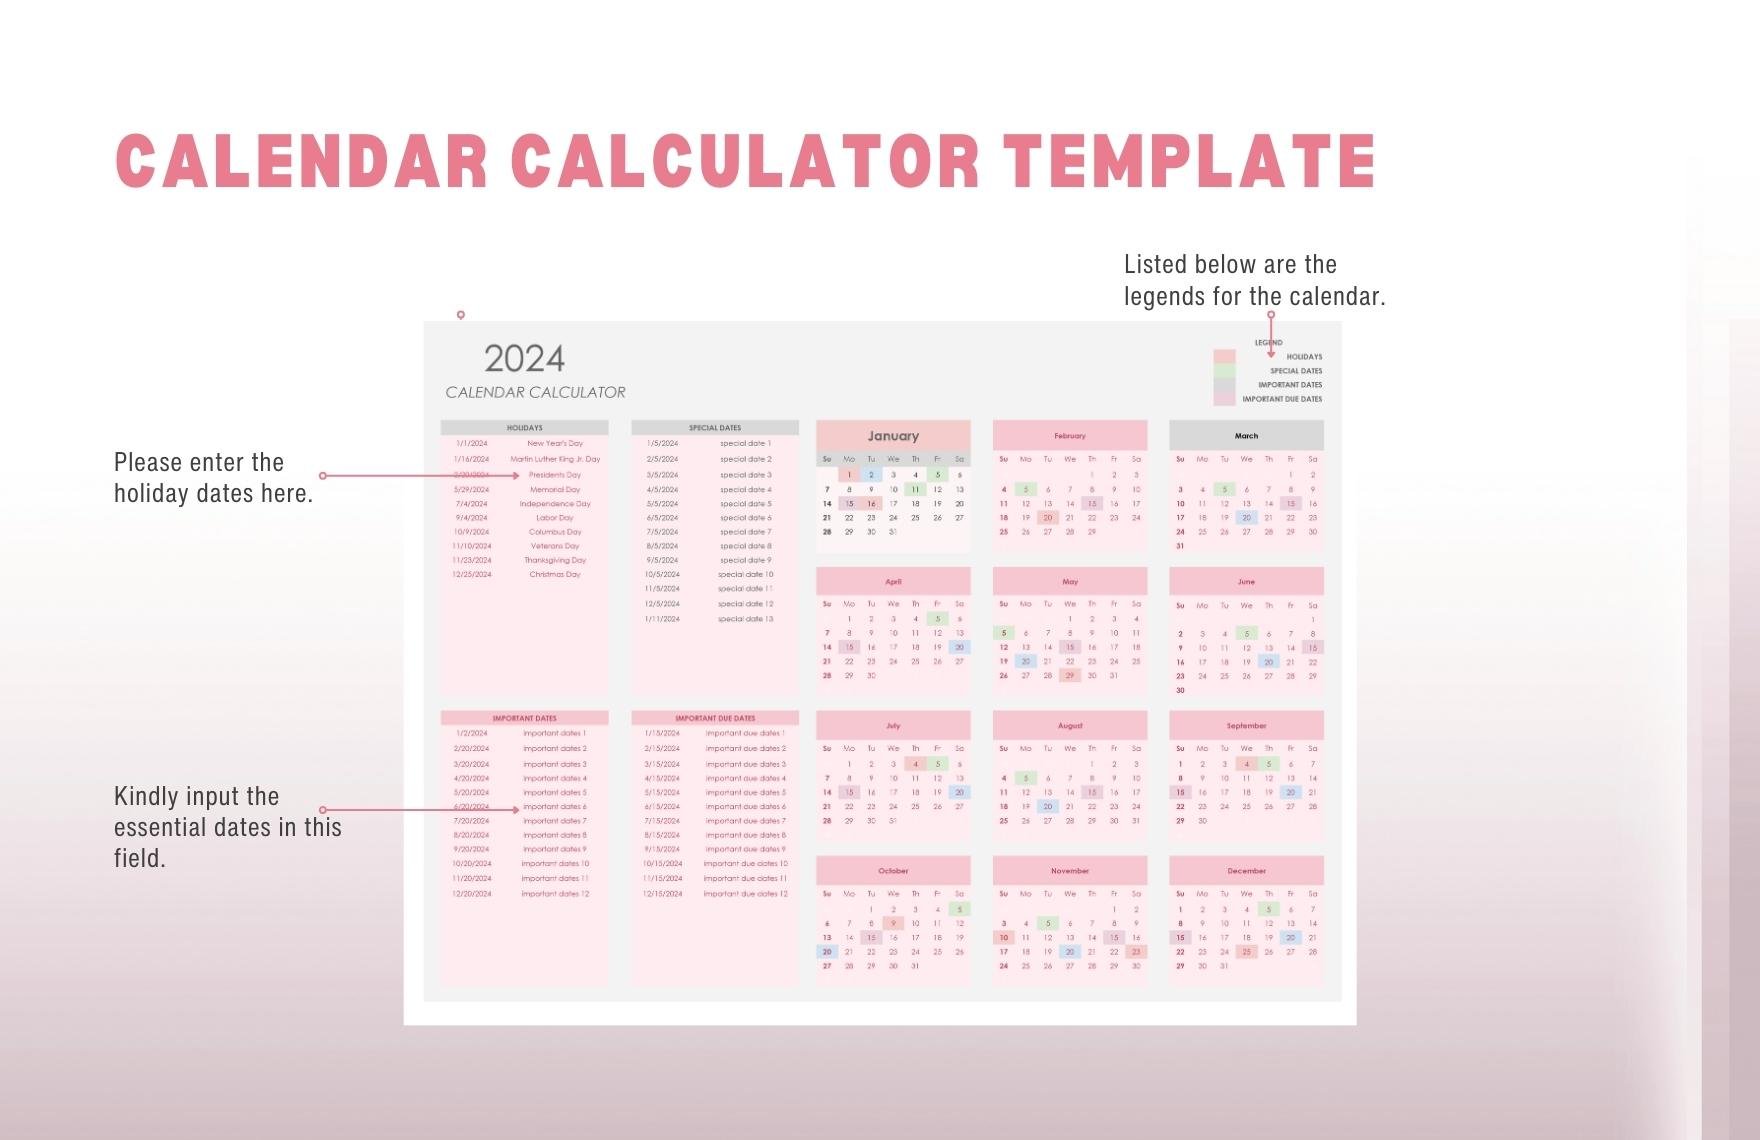 Calendar Calculator Template